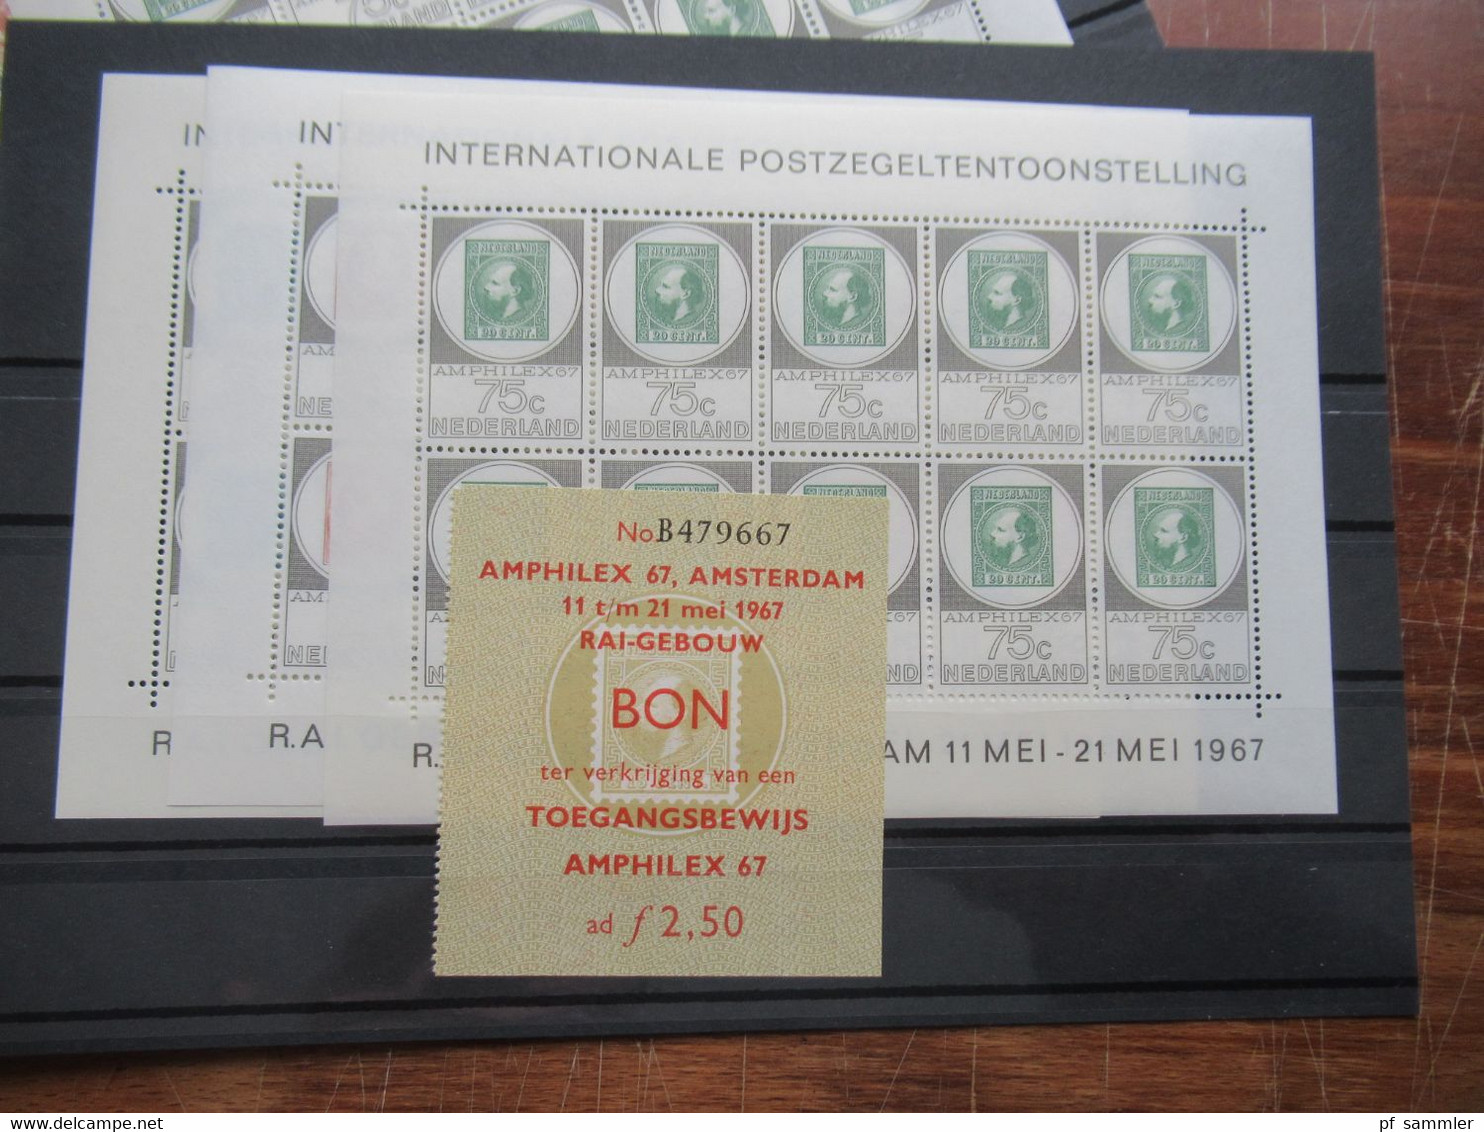 Niederlande 1967 Amphilex  Kleinbogensatz 5x mit Eintrittskarten und original Versandumschlag Spoedbestelling Port Payé